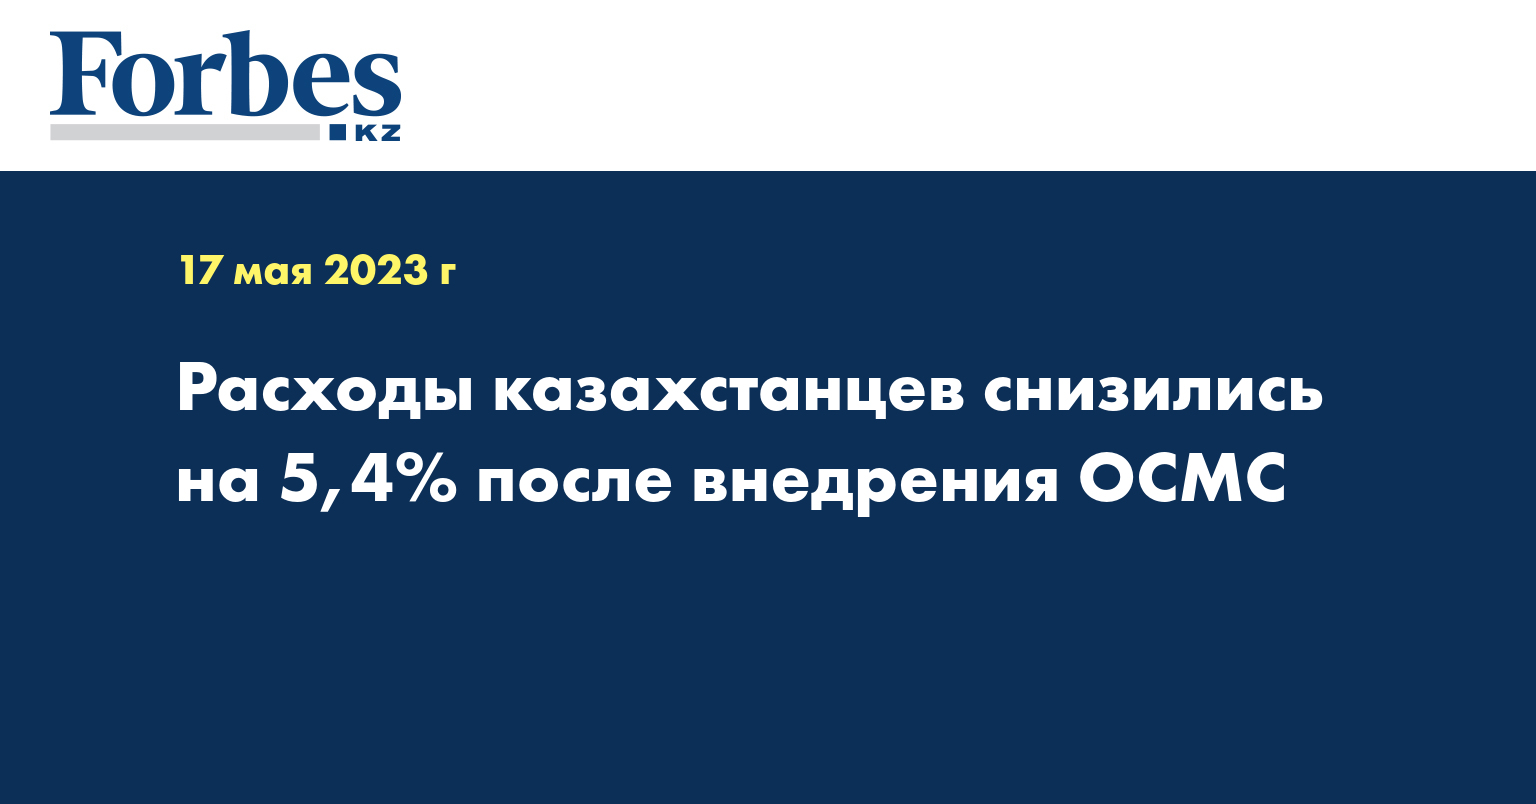 Расходы казахстанцев снизились на 5,4% после внедрения ОСМС